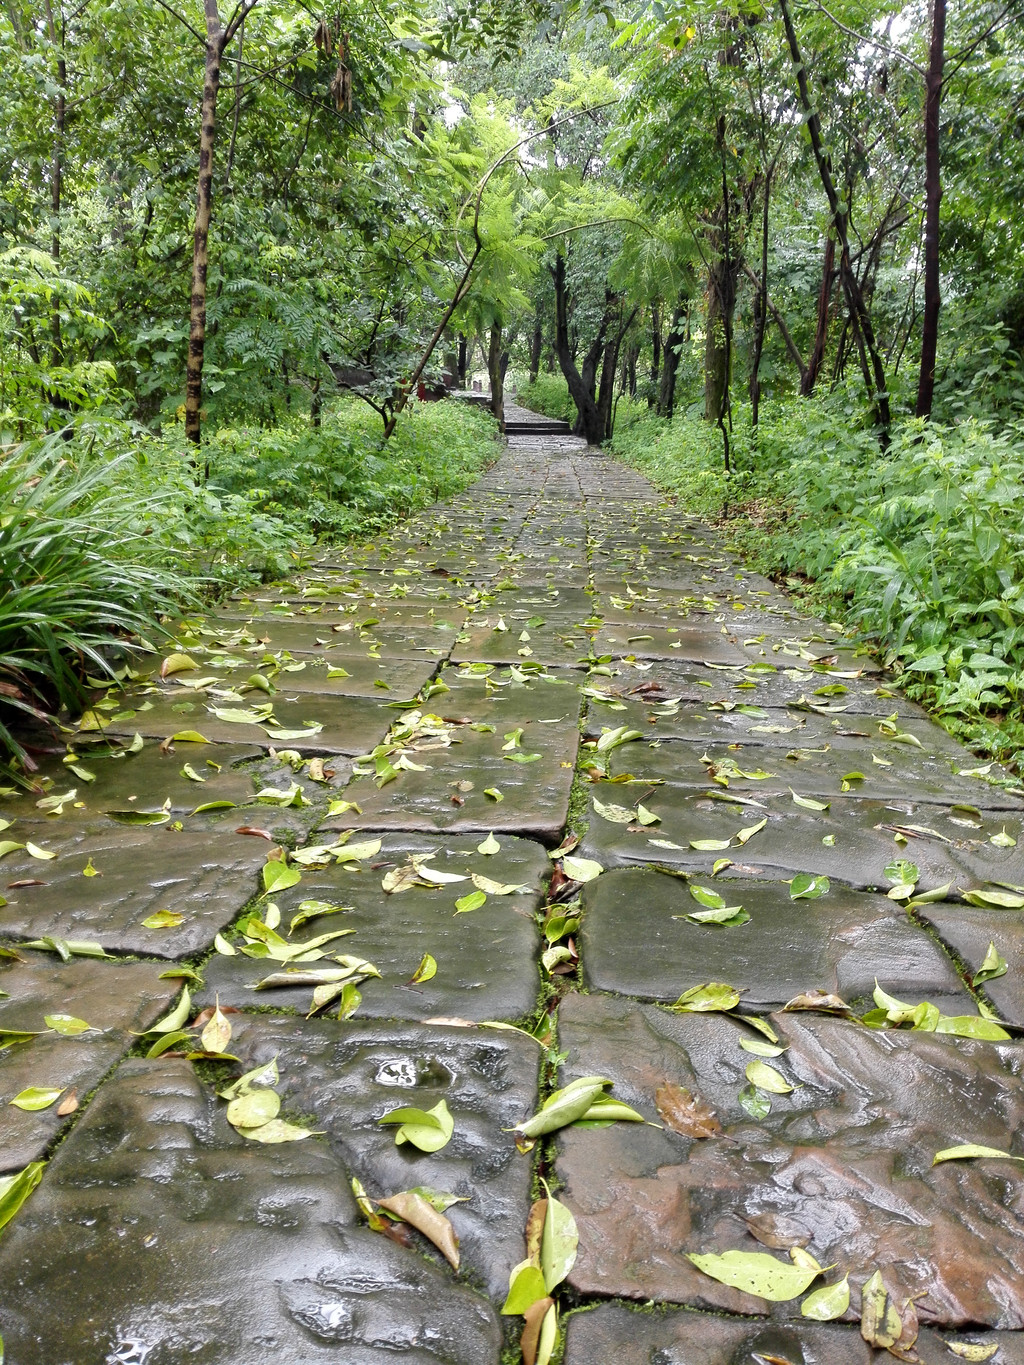 雨中落叶铺面石板路更显幽深